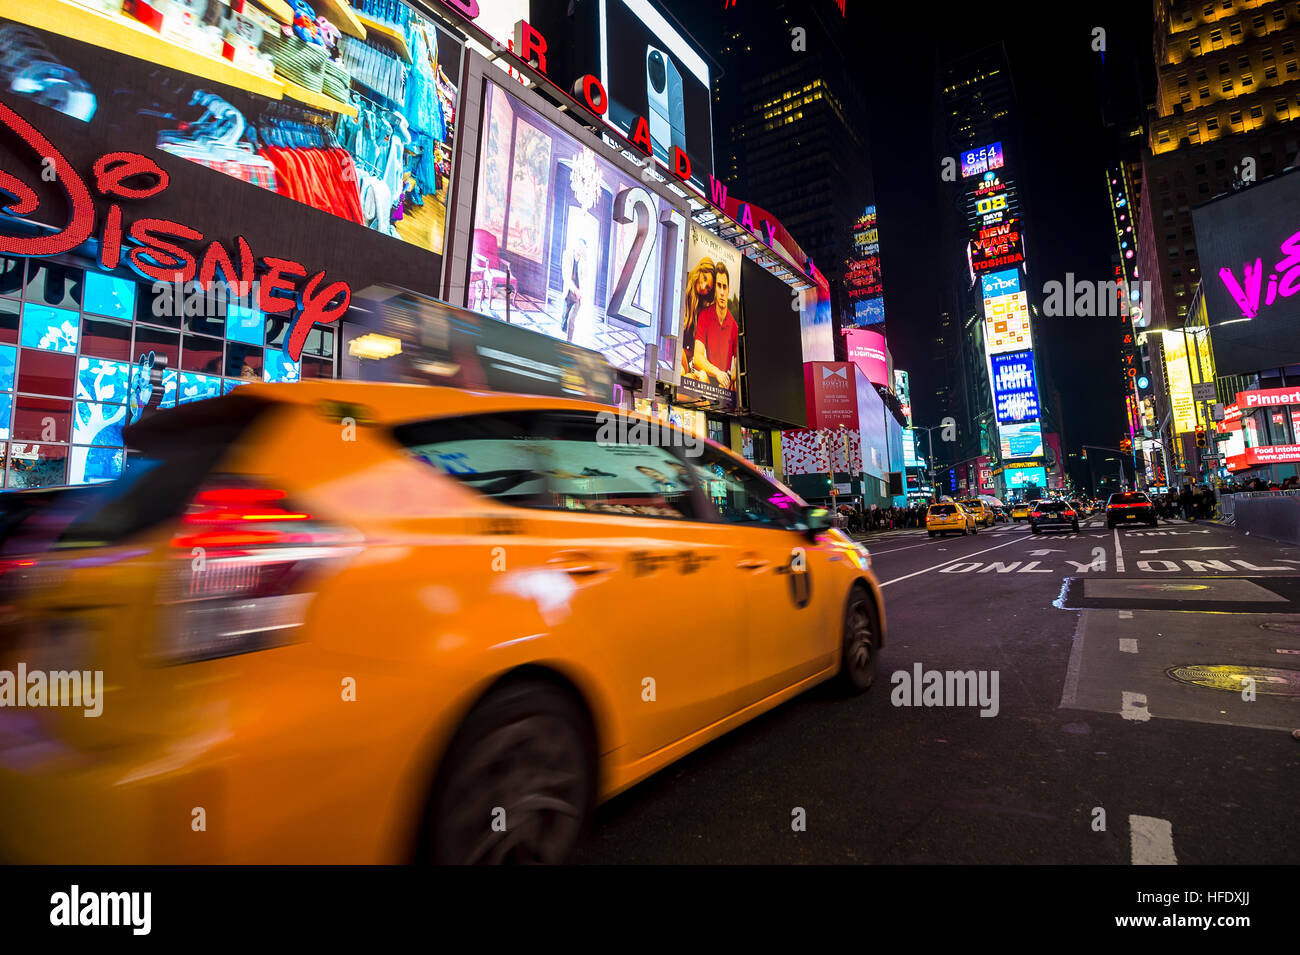 NEW YORK CITY - 23 dicembre 2016: Taxi passa Times Square in motion blur come la città si prepara per il cenone di fine anno. Foto Stock